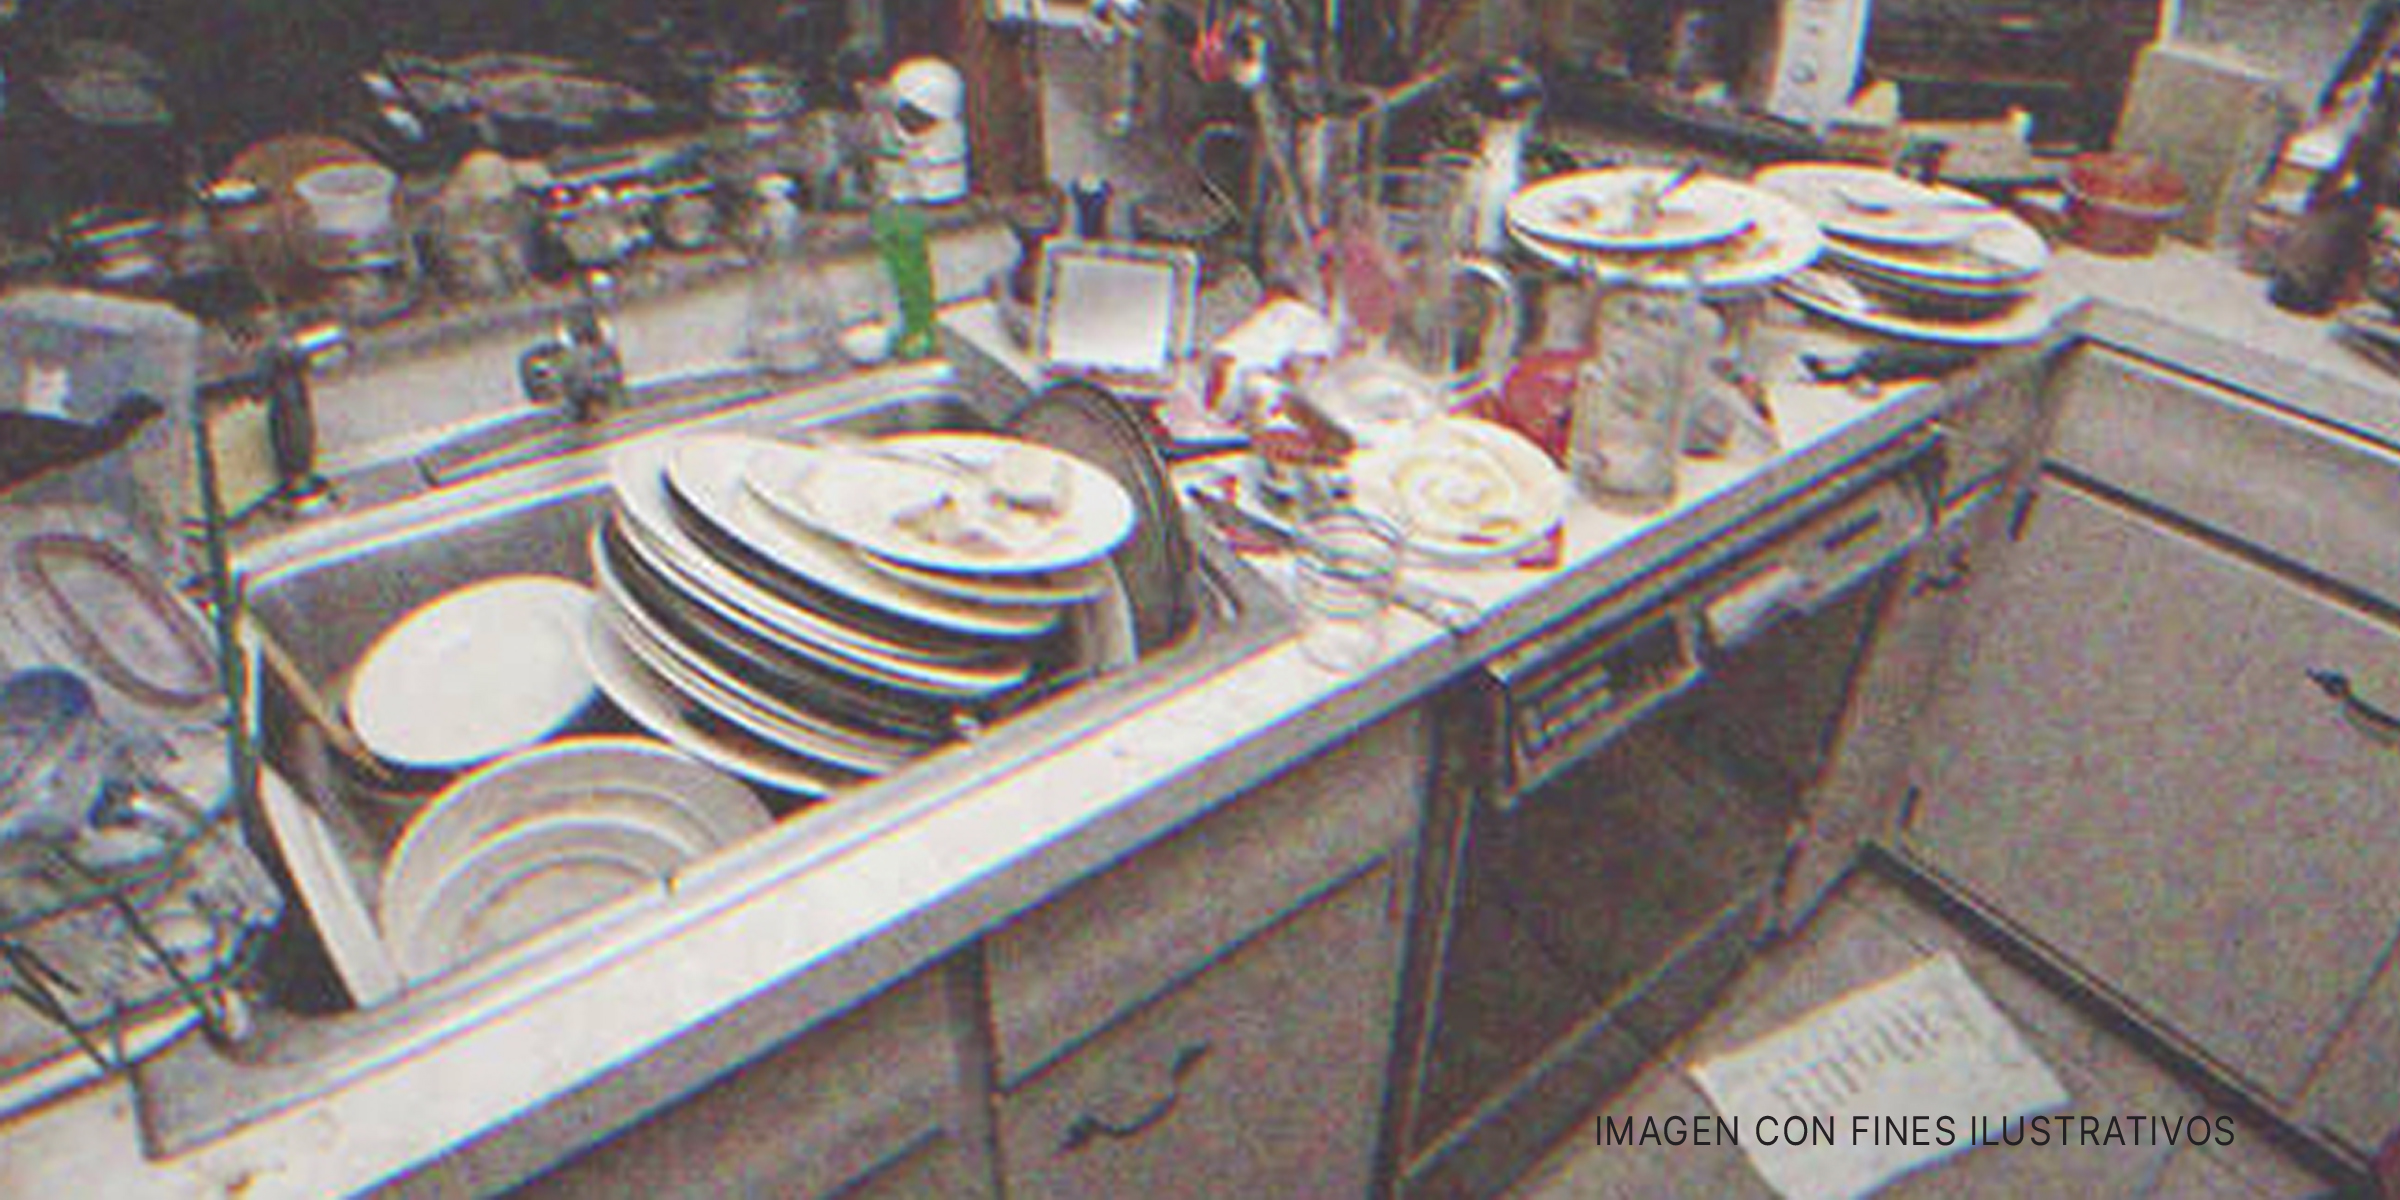 Platos sucios en una cocina | Foto: Shutterstock